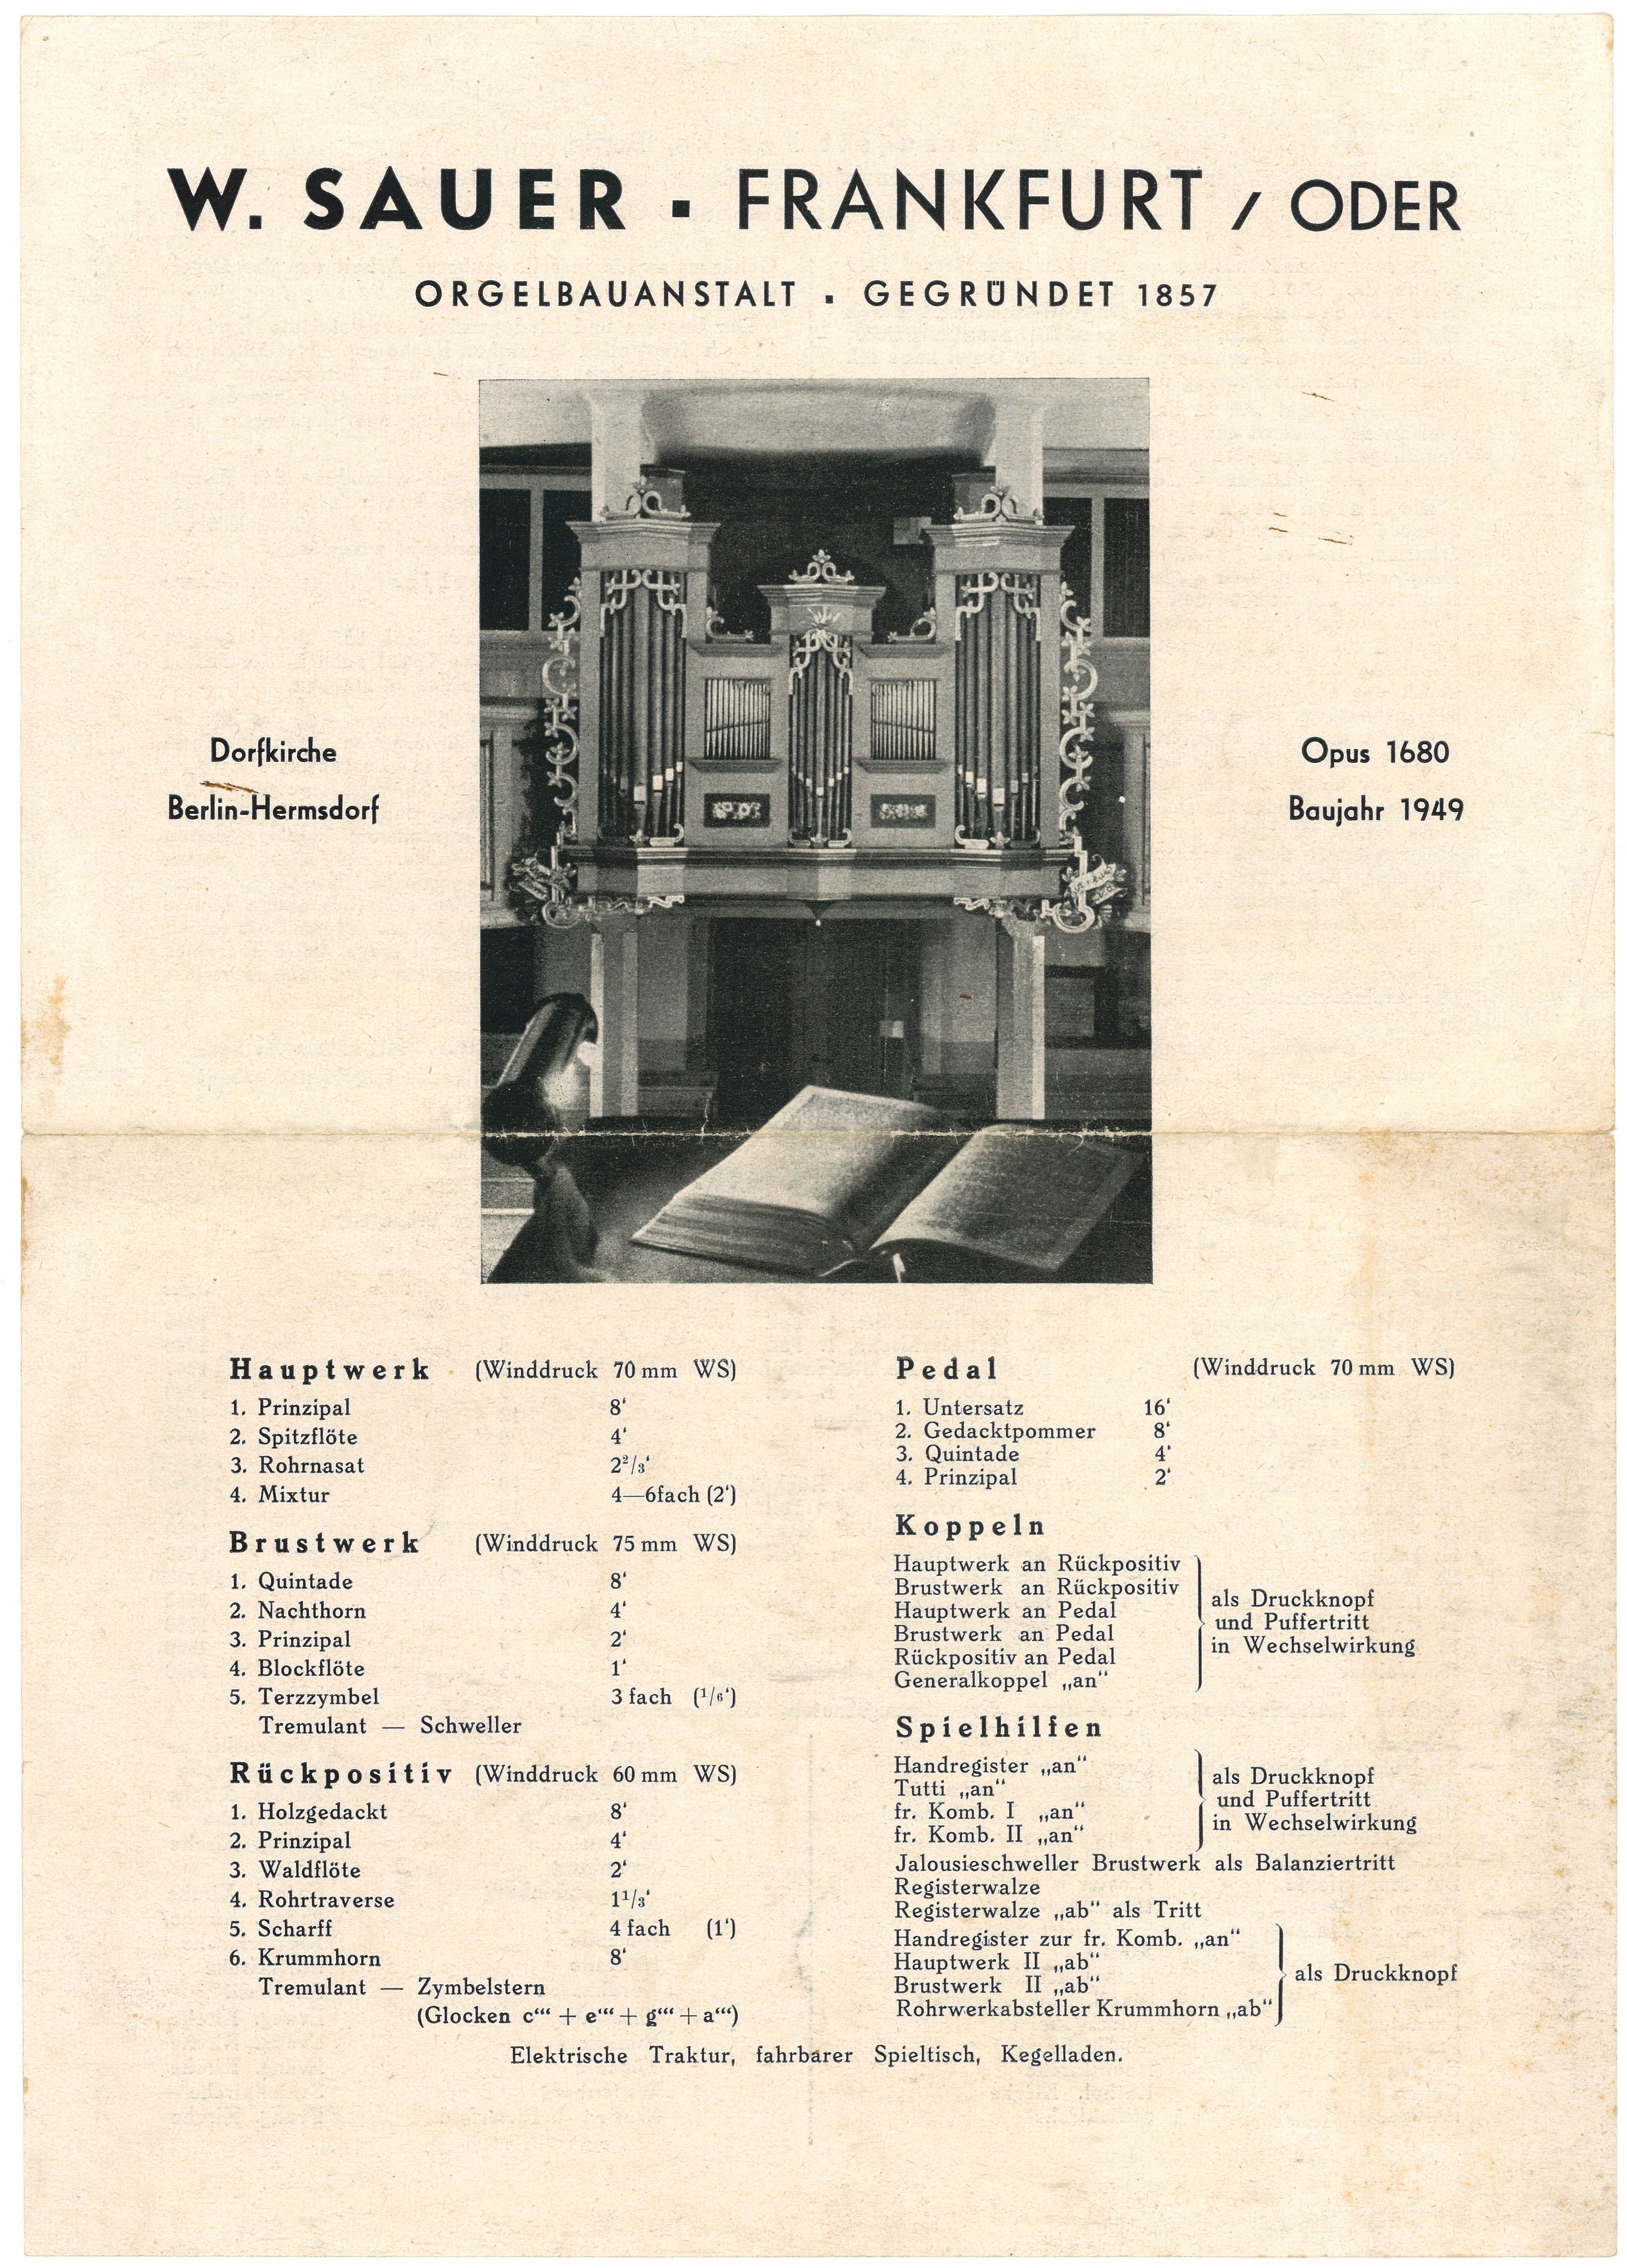 Werbeblatt der Orgelbauanstalt W. Sauer in Frankfurt/Oder (1950) (Landesgeschichtliche Vereinigung für die Mark Brandenburg e.V., Archiv CC BY)